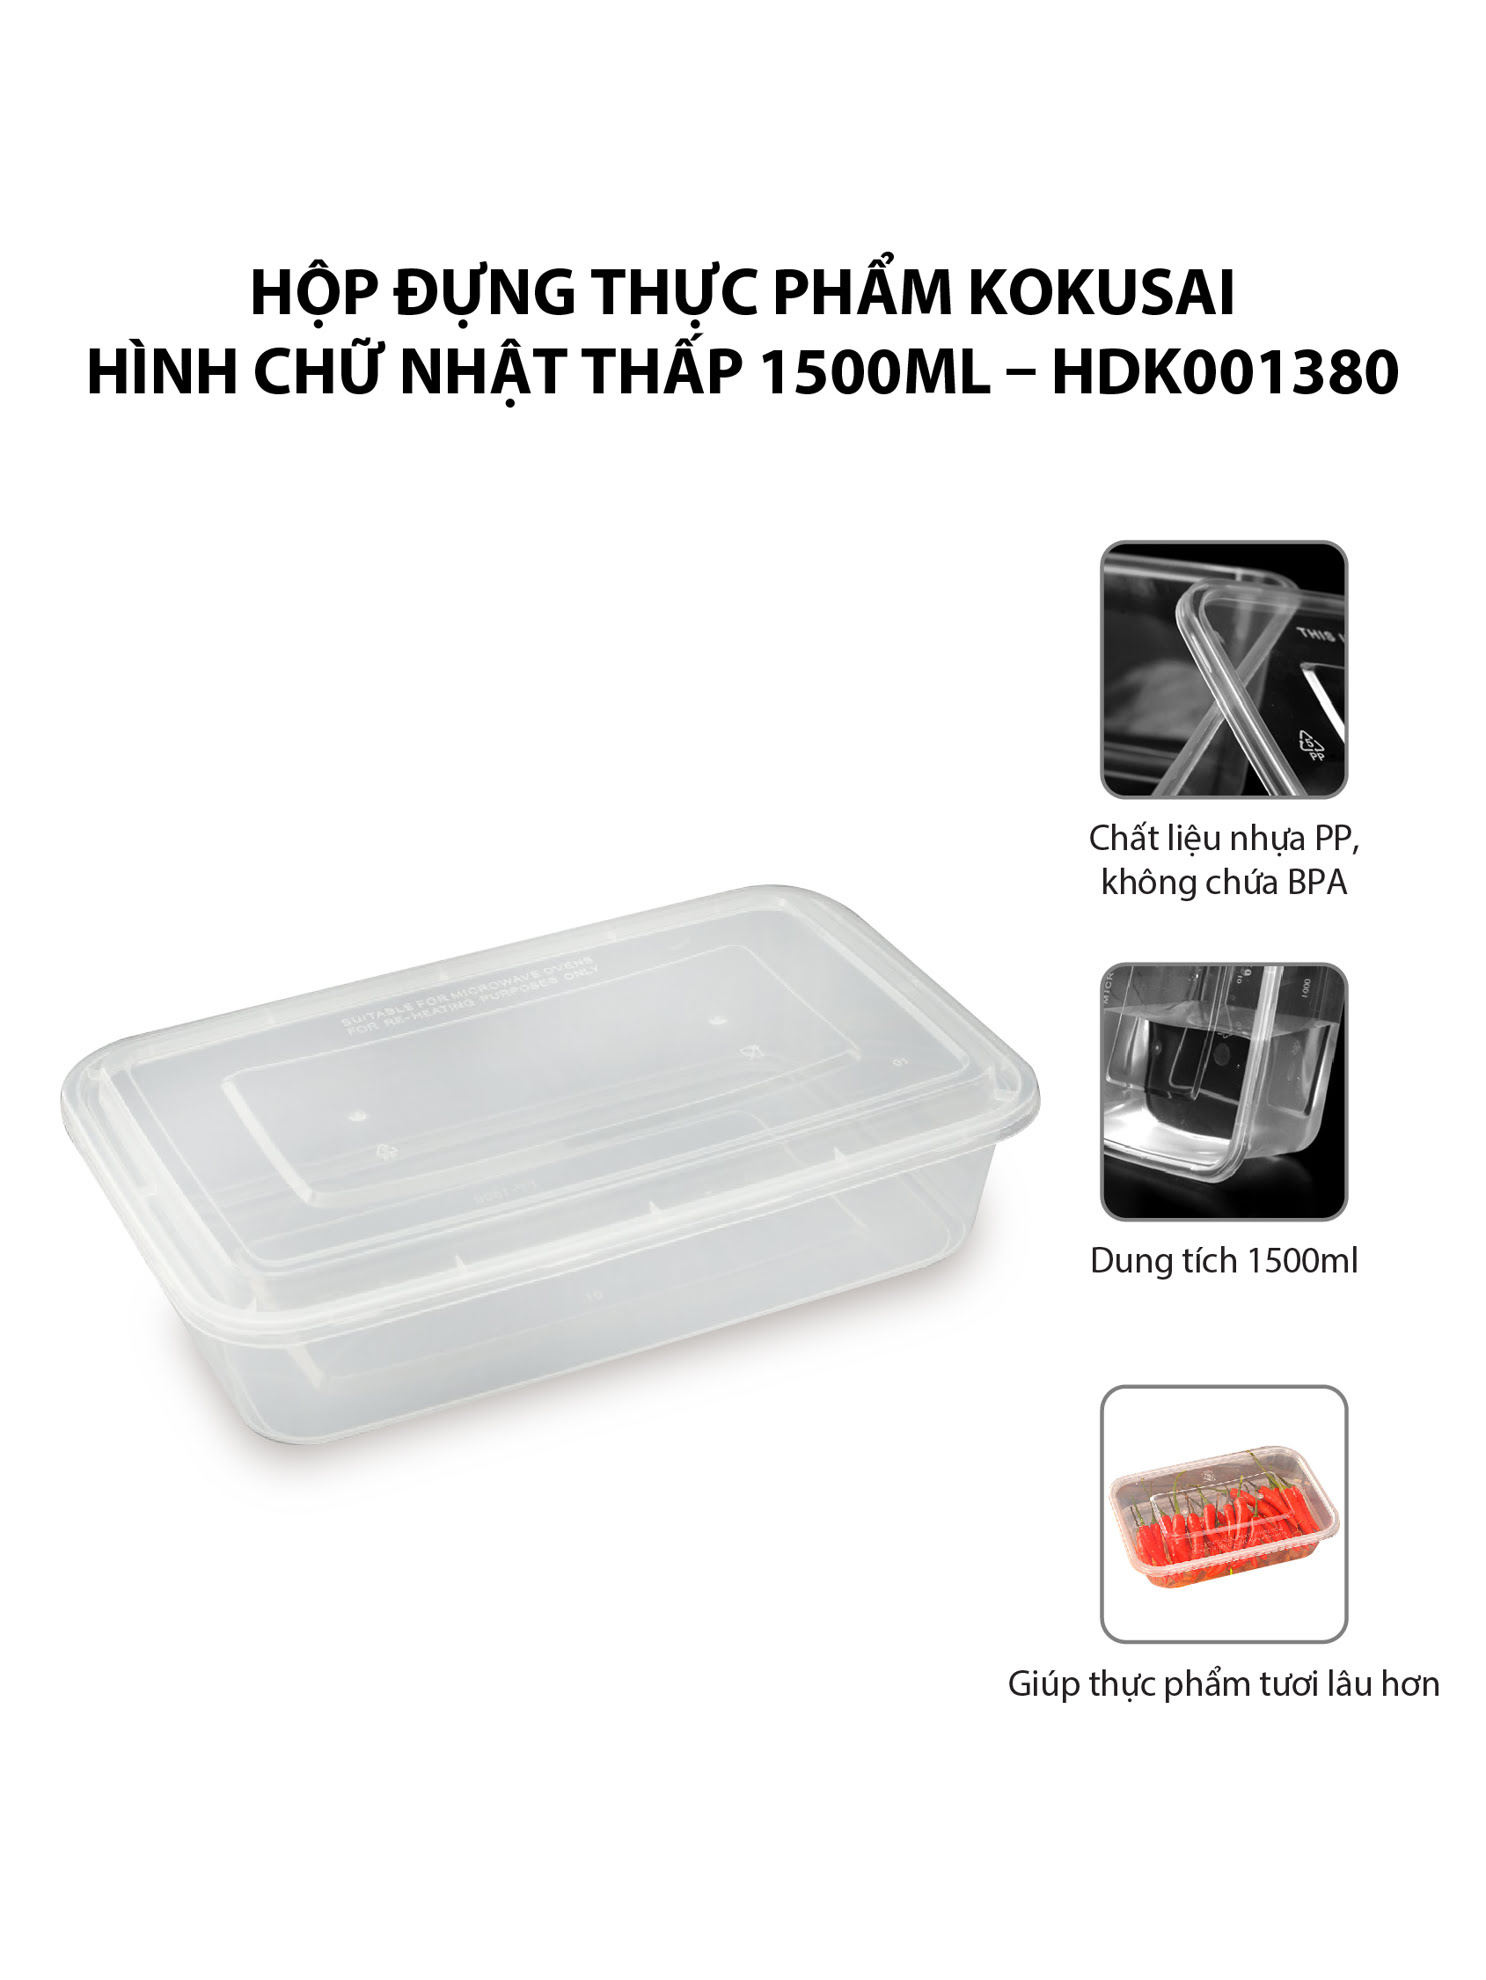 Hộp đựng thực phẩm Kokusai Hình chữ nhật thấp 1500ml – HDK001380